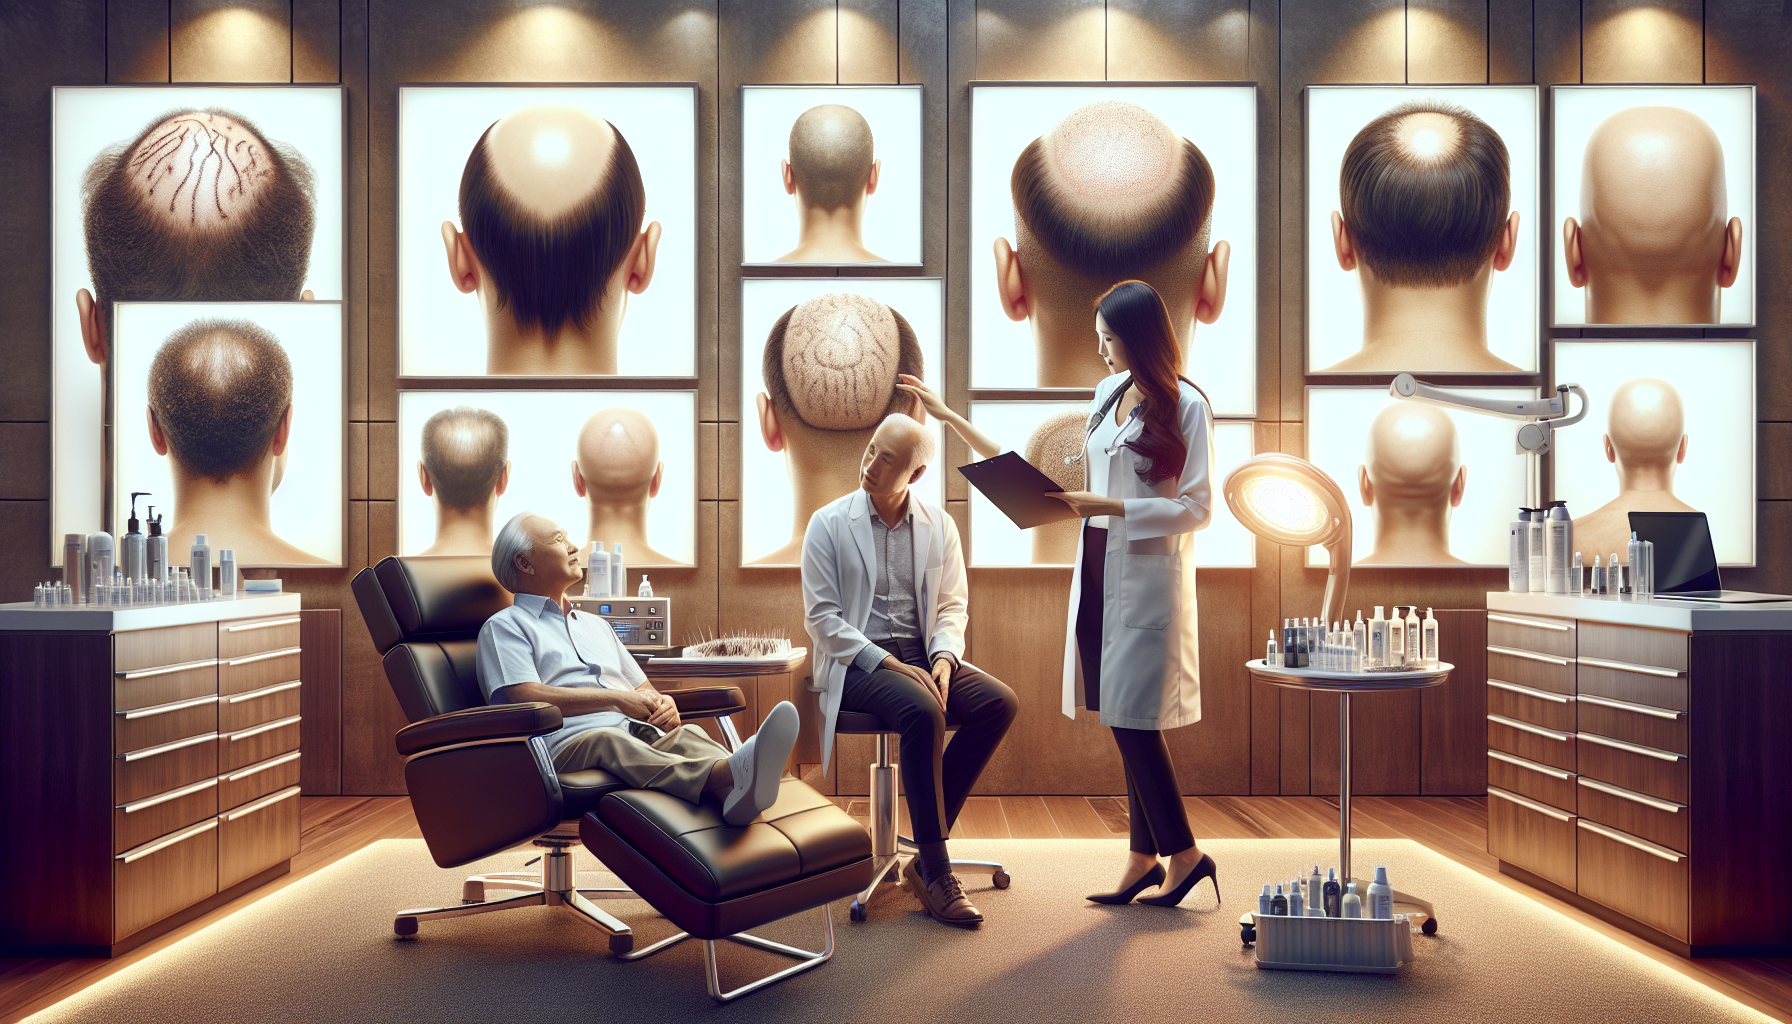 découvrez les raisons de choisir la meilleure clinique de greffe de cheveux en turquie et profitez d'une expertise de qualité pour retrouver une chevelure dense et naturelle.